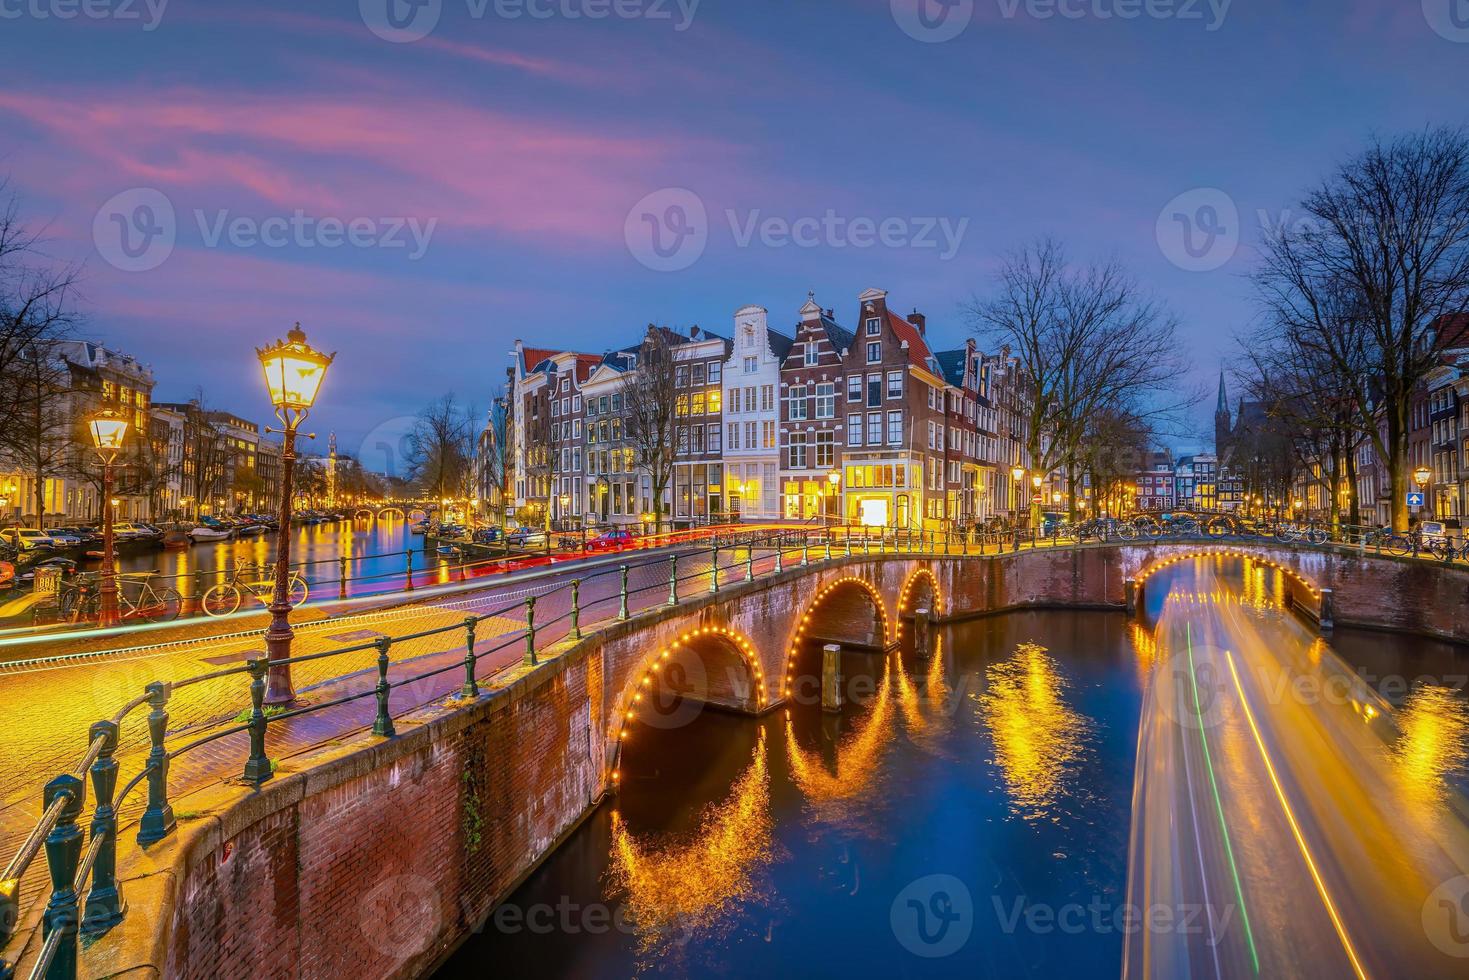 de skyline van de binnenstad van amsterdam. stadsgezicht in nederland foto